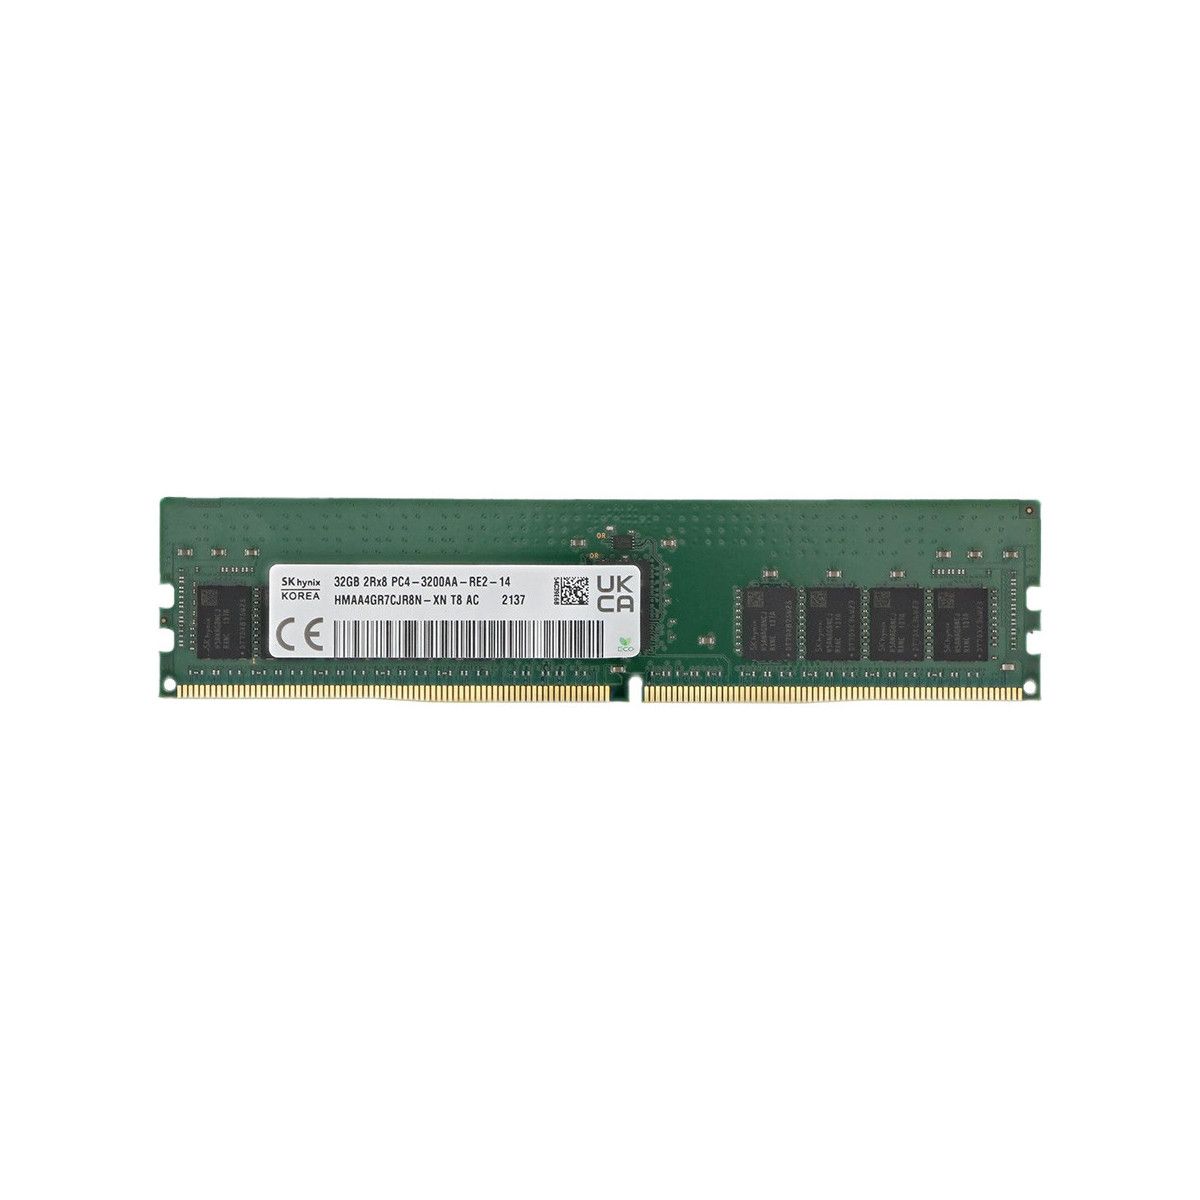 MEM-DR432L-HL04-ER32-MS -NO- Memstar 1x 32GB DDR4-3200 RDIMM